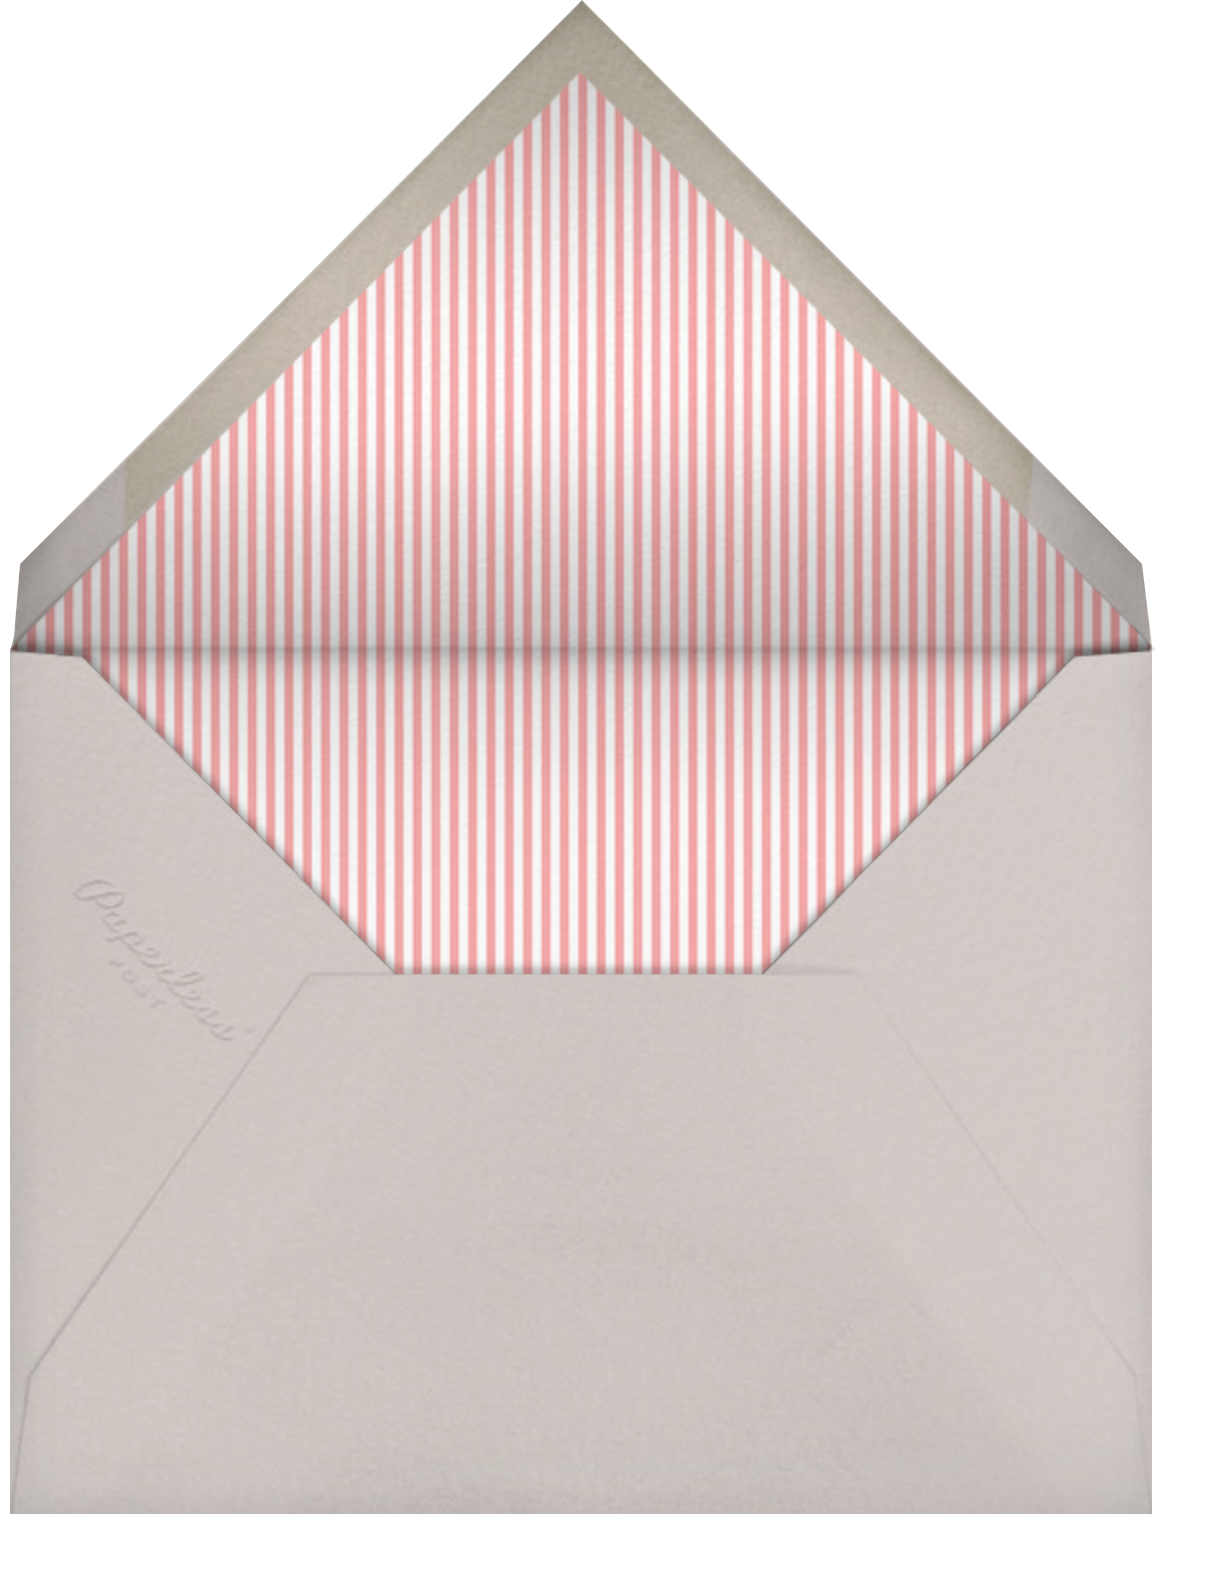 Little Heart Halo (Announcement) - Gold - Little Cube - Envelope